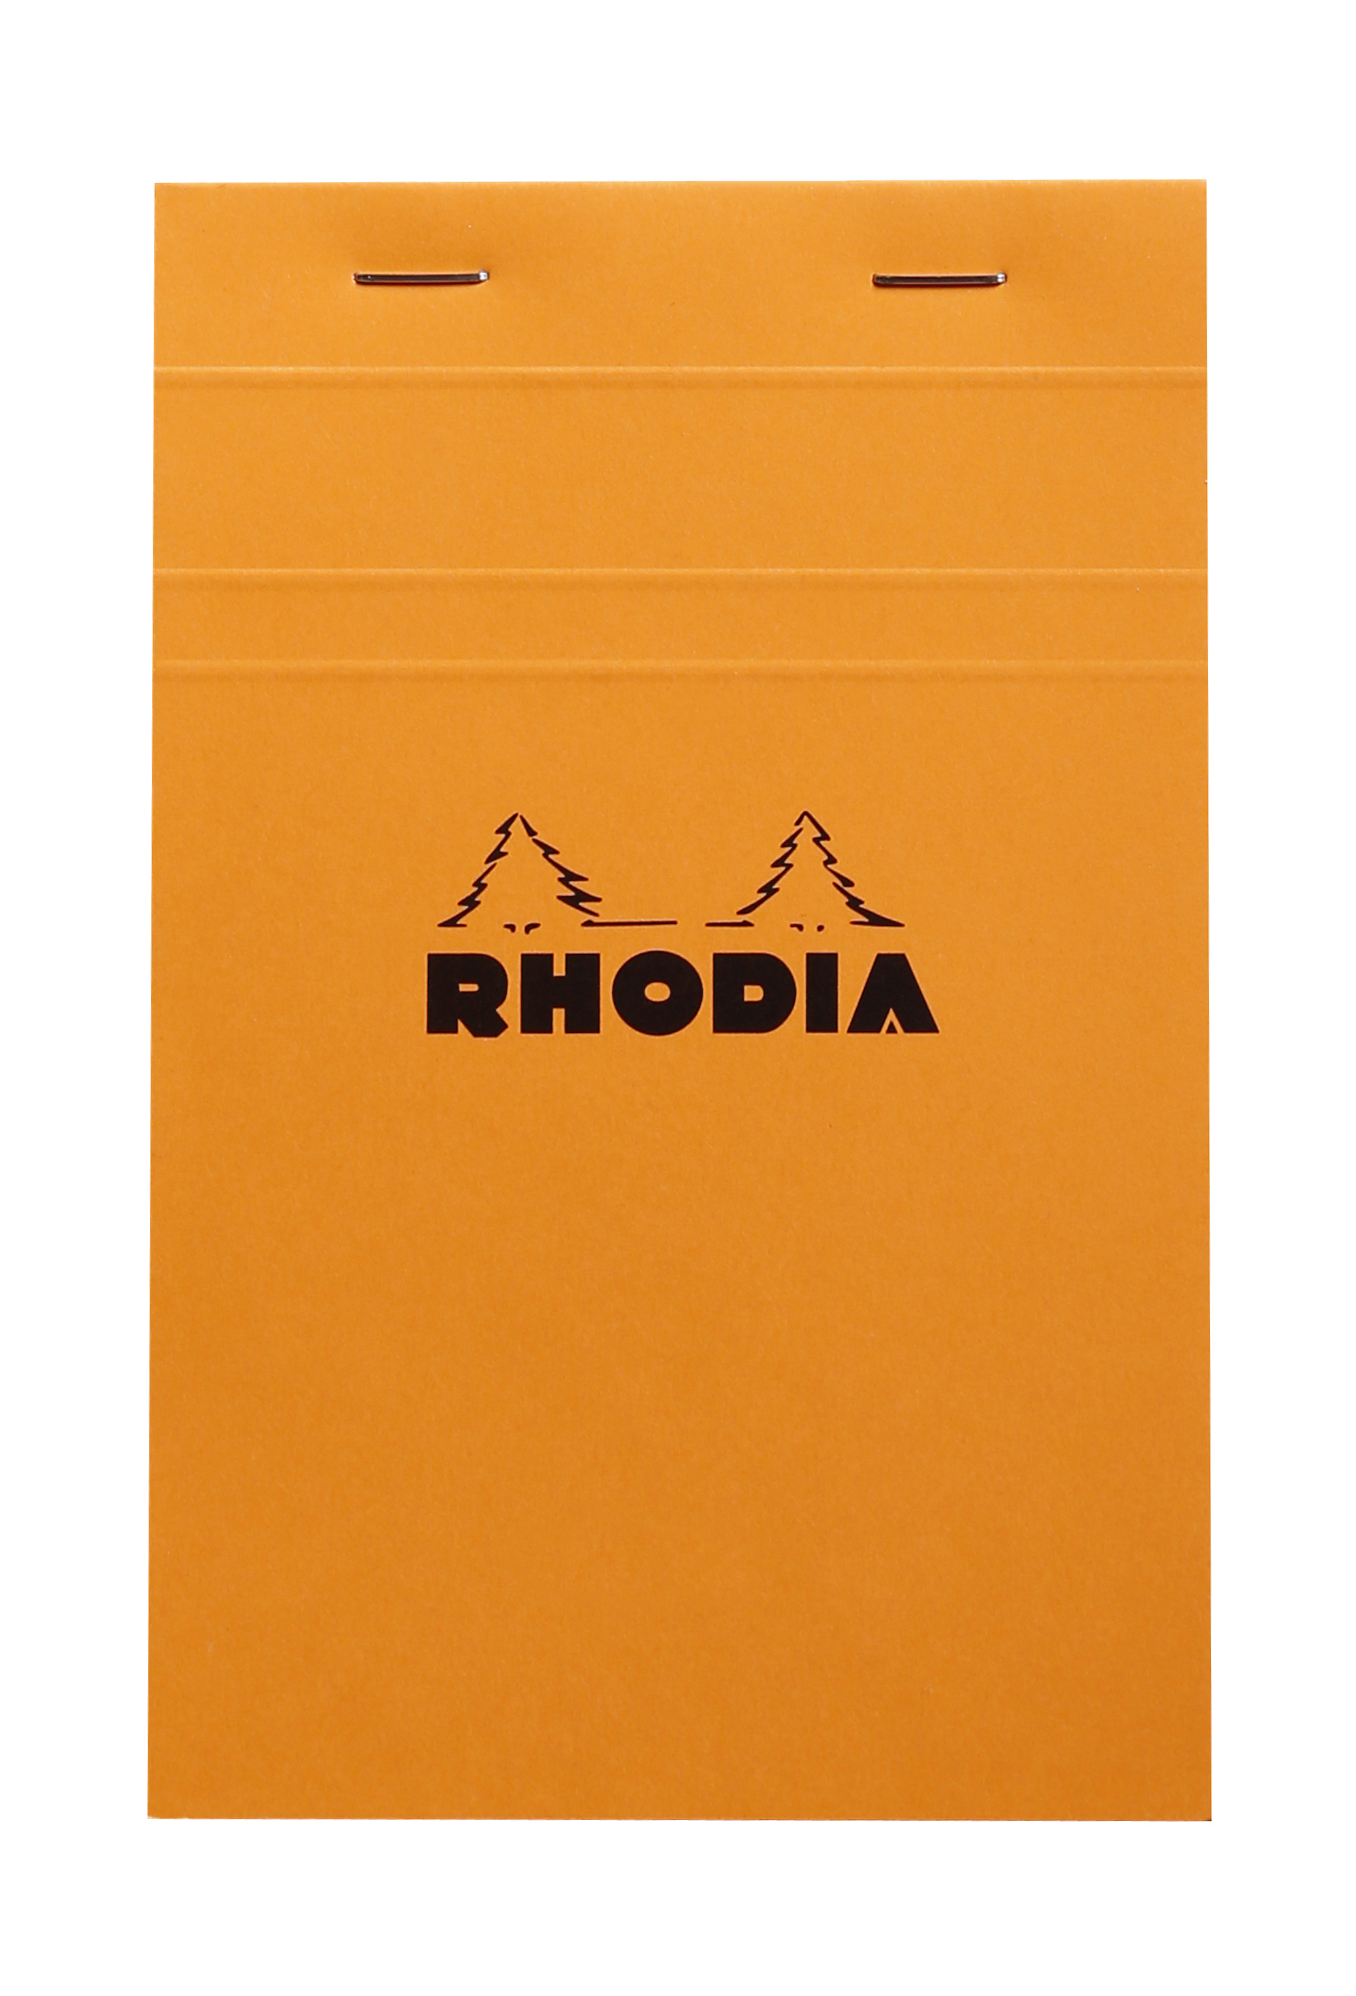 Rhodia - Bloc notes - 11 x 17 cm - petits carreaux - 80g Pas Cher